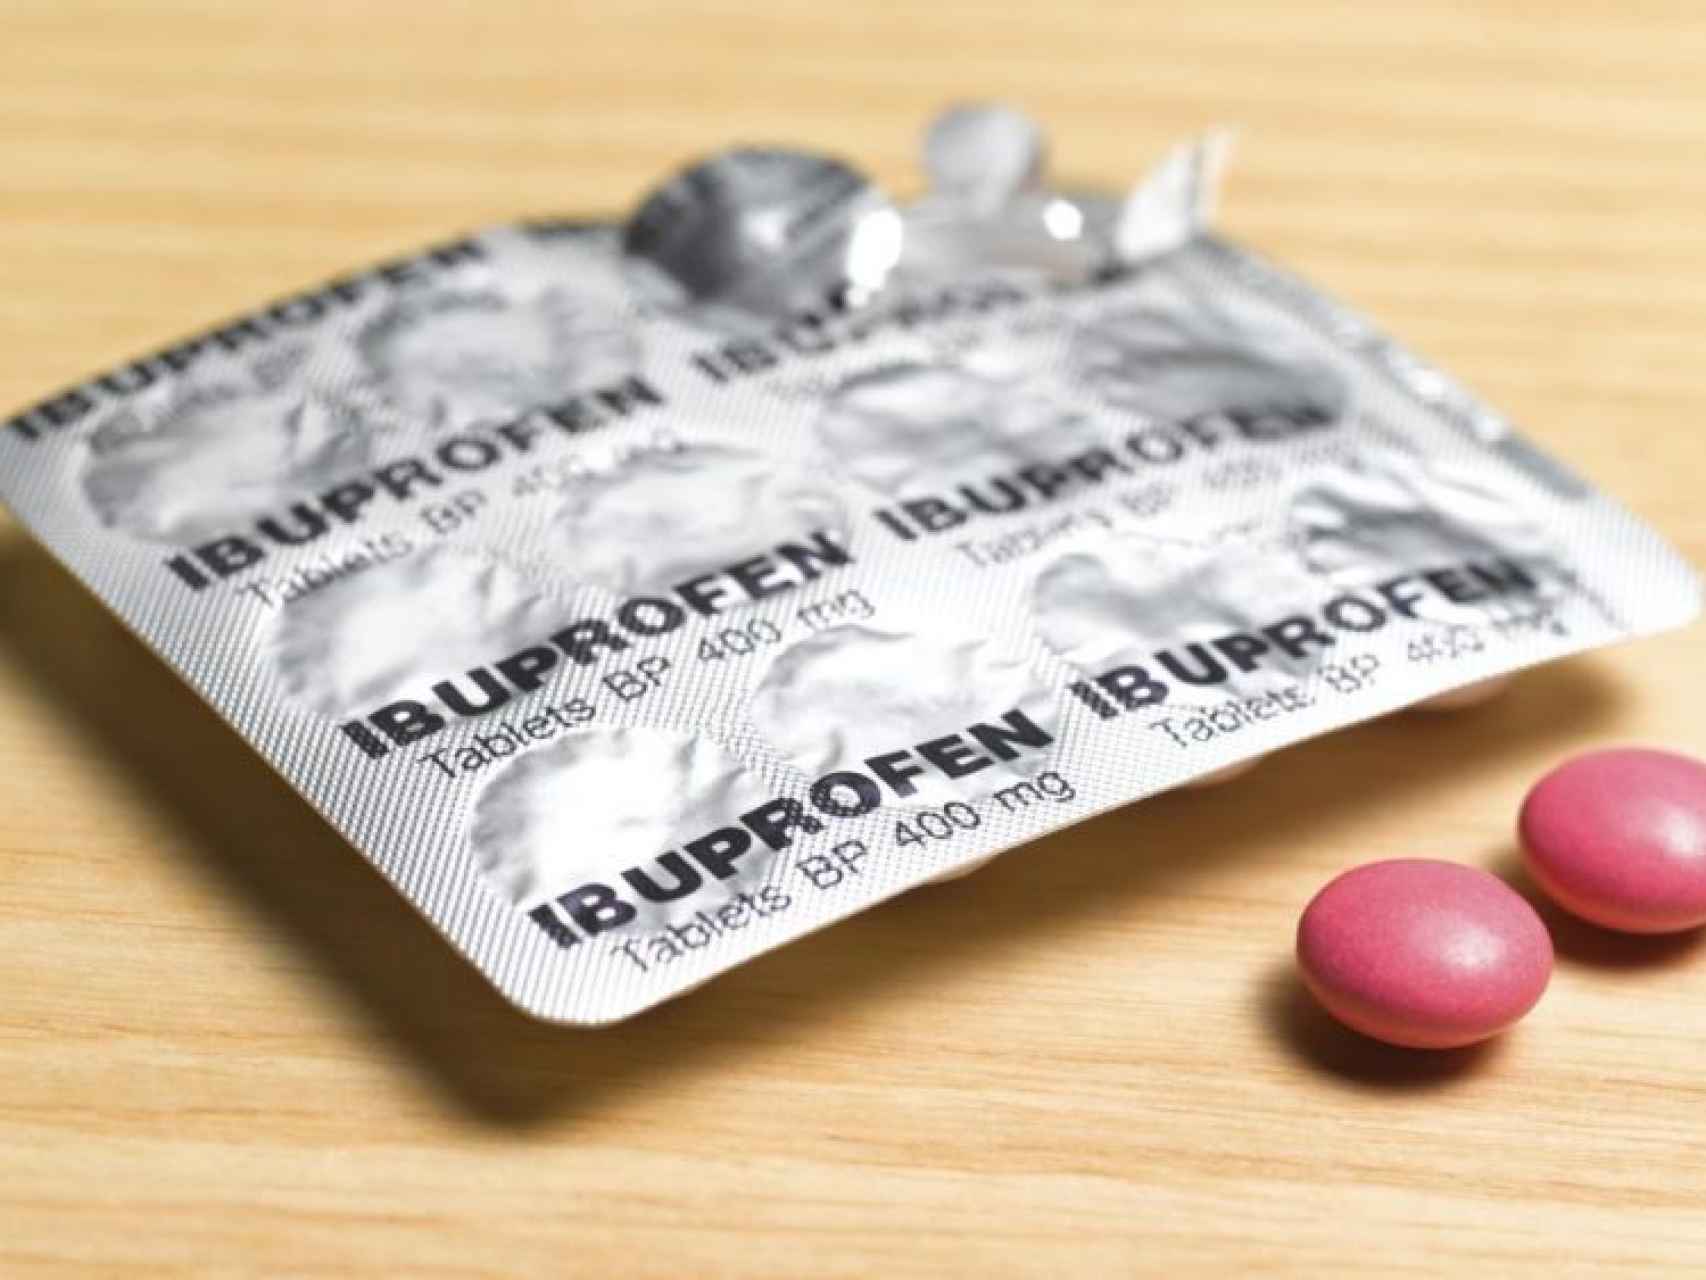 Un blister de ibuprofeno.